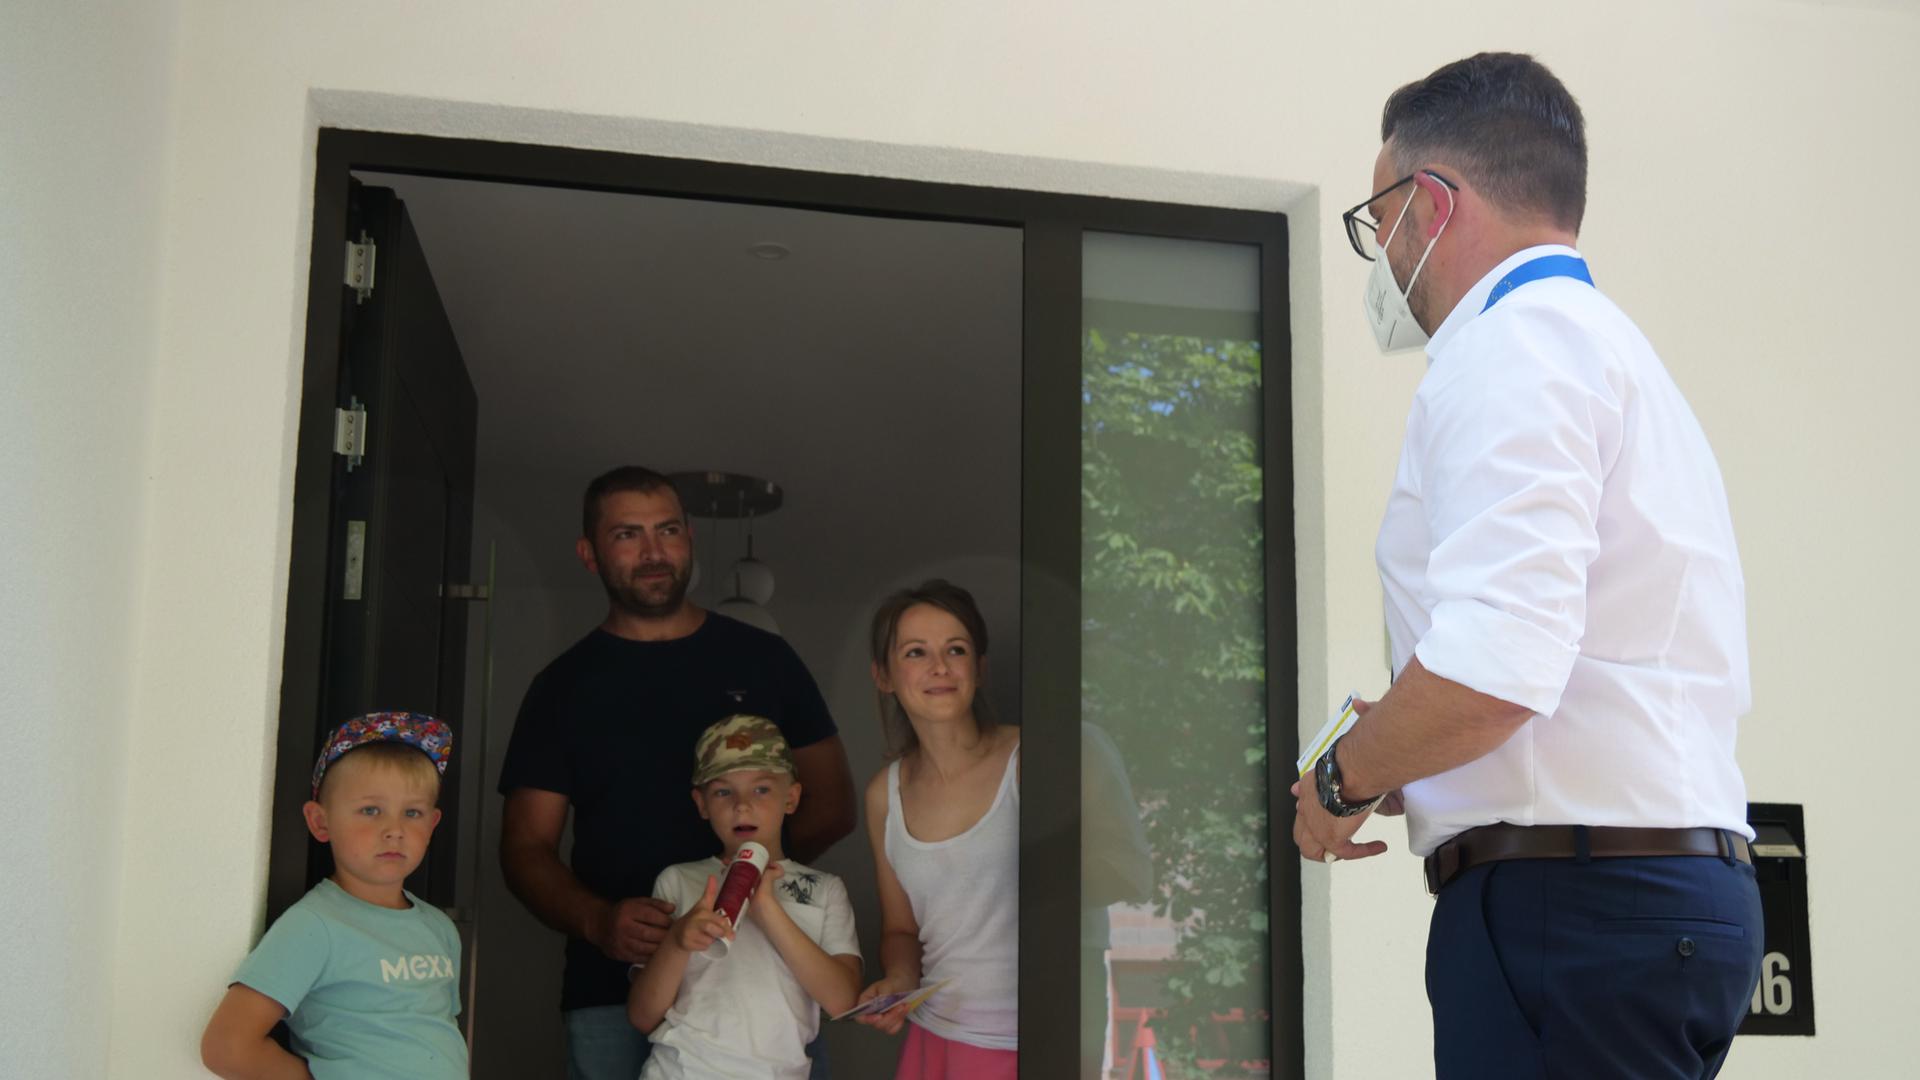 Familie Mereschko bekam am Freitagnachmittag überraschend Besuch von OB Peter Boch (rechts), der von Haustür zu Haustür unterwegs war, um für die Impfung zu werben